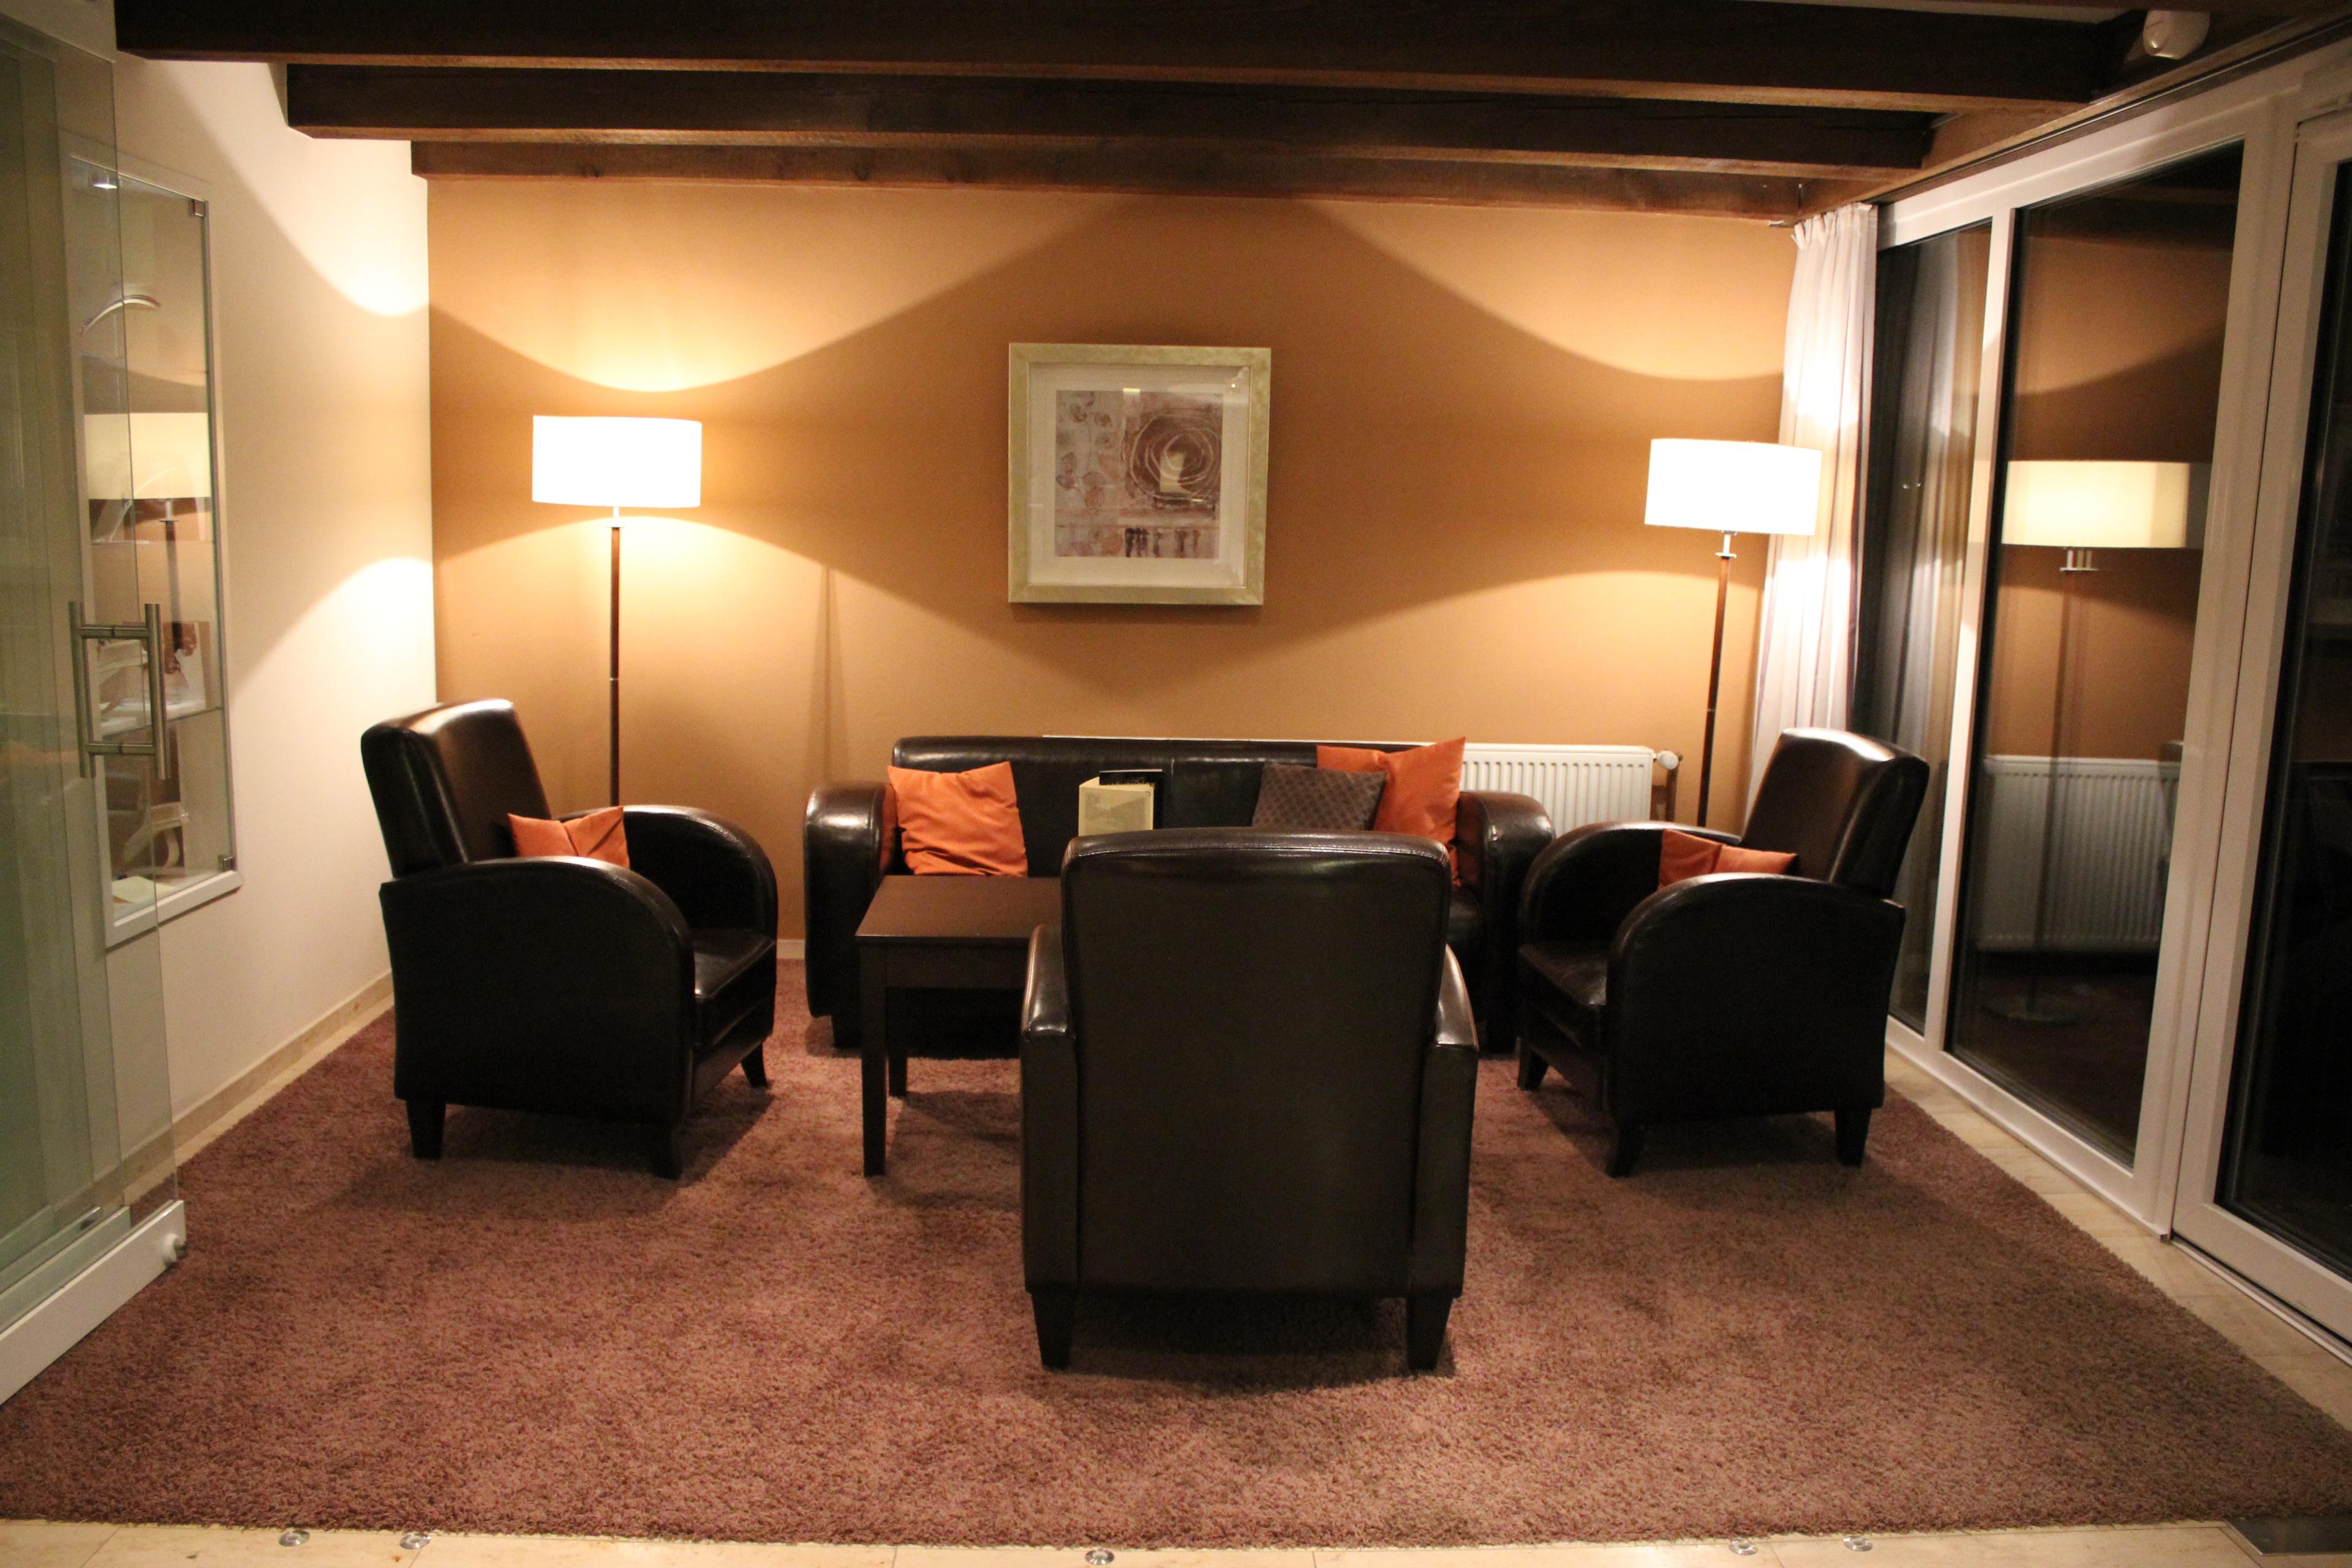 Sitzgruppe in der Hotelbar im VitalHotel Ascona in der Lueneburger Heide.JPG